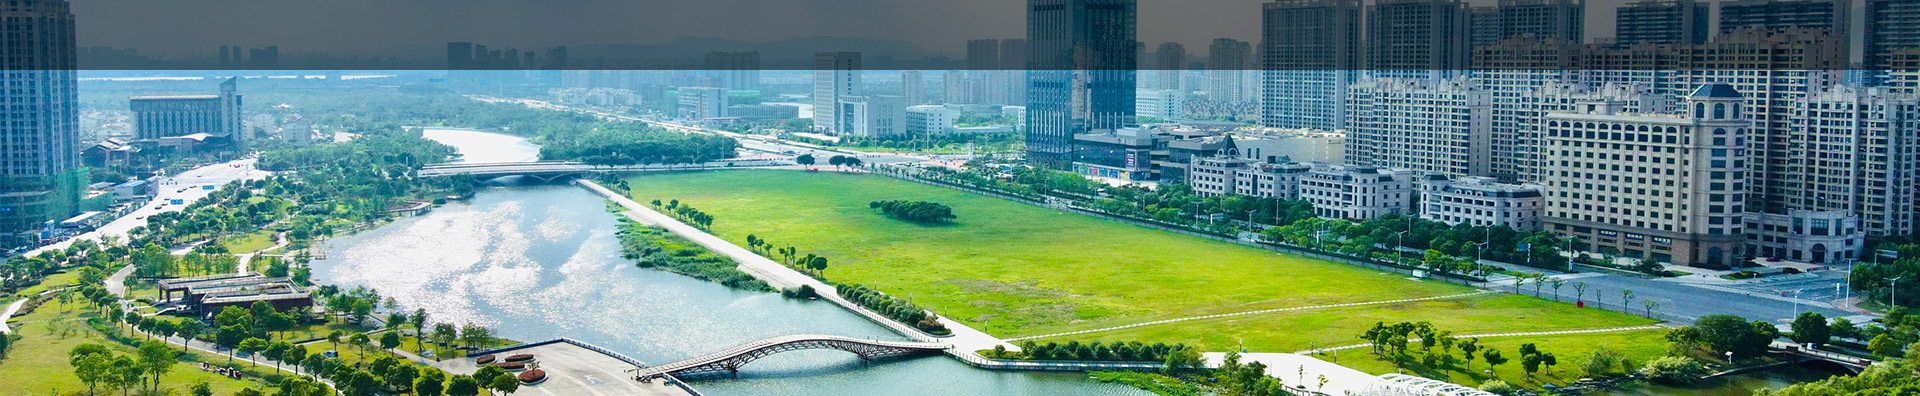 推动绿色发展   建设美丽中国